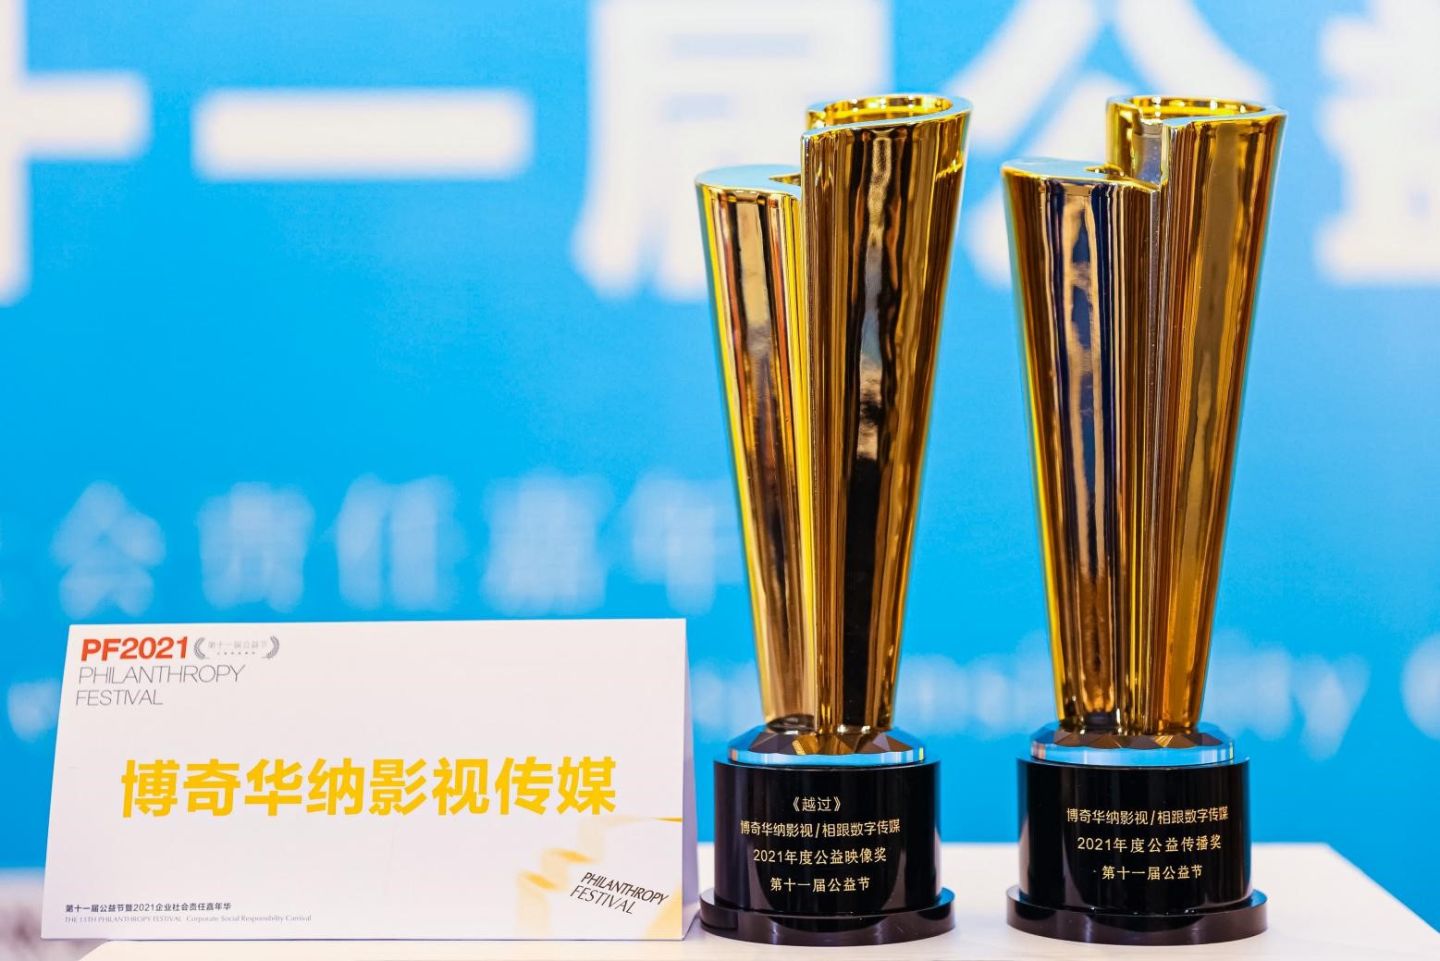 自闭症儿童电影《越过》荣获第十一届中国公益节两项大奖